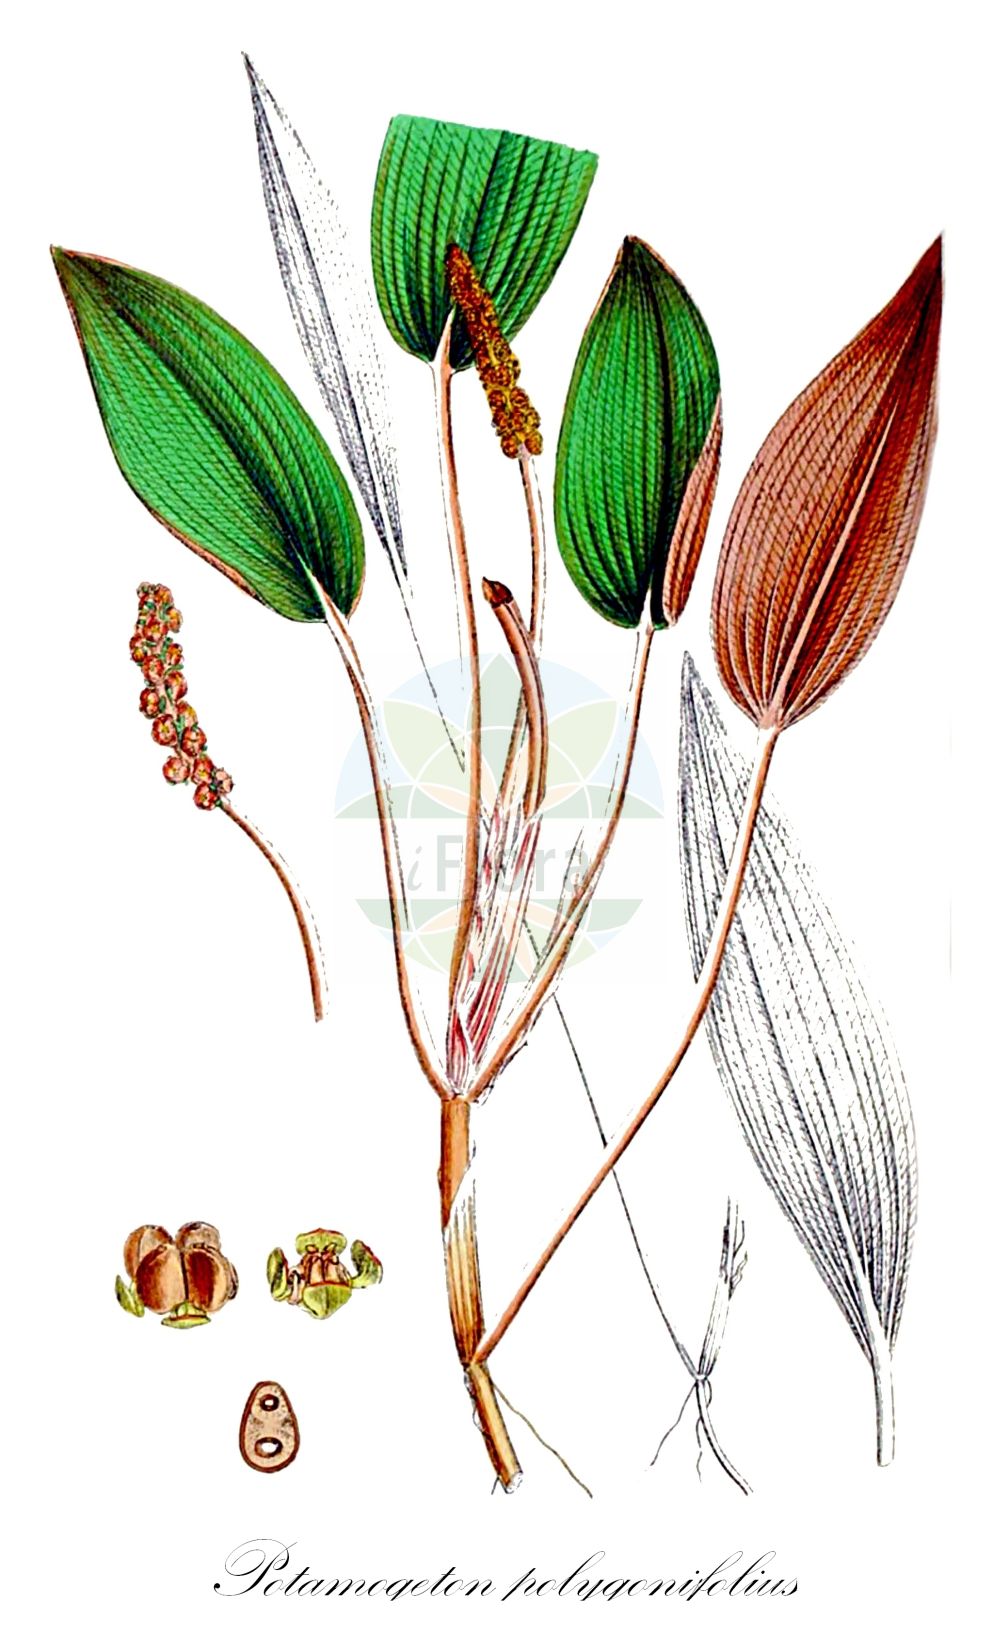 Historische Abbildung von Potamogeton polygonifolius (Knöterich-Laichkraut - Bog Pondweed). Das Bild zeigt Blatt, Bluete, Frucht und Same. ---- Historical Drawing of Potamogeton polygonifolius (Knöterich-Laichkraut - Bog Pondweed). The image is showing leaf, flower, fruit and seed.(Potamogeton polygonifolius,Knöterich-Laichkraut,Bog Pondweed,Potamogeton microcarpus,Potamogeton oblongus,Potamogeton polygonifolius,Knoeterich-Laichkraut,Bog Pondweed,Cinnamonspot Pondweed,Potamogeton,Laichkraut,Pondweed,Potamogetonaceae,Laichkrautgewächse,Pondweed family,Blatt,Bluete,Frucht,Same,leaf,flower,fruit,seed,Sowerby (1790-1813))